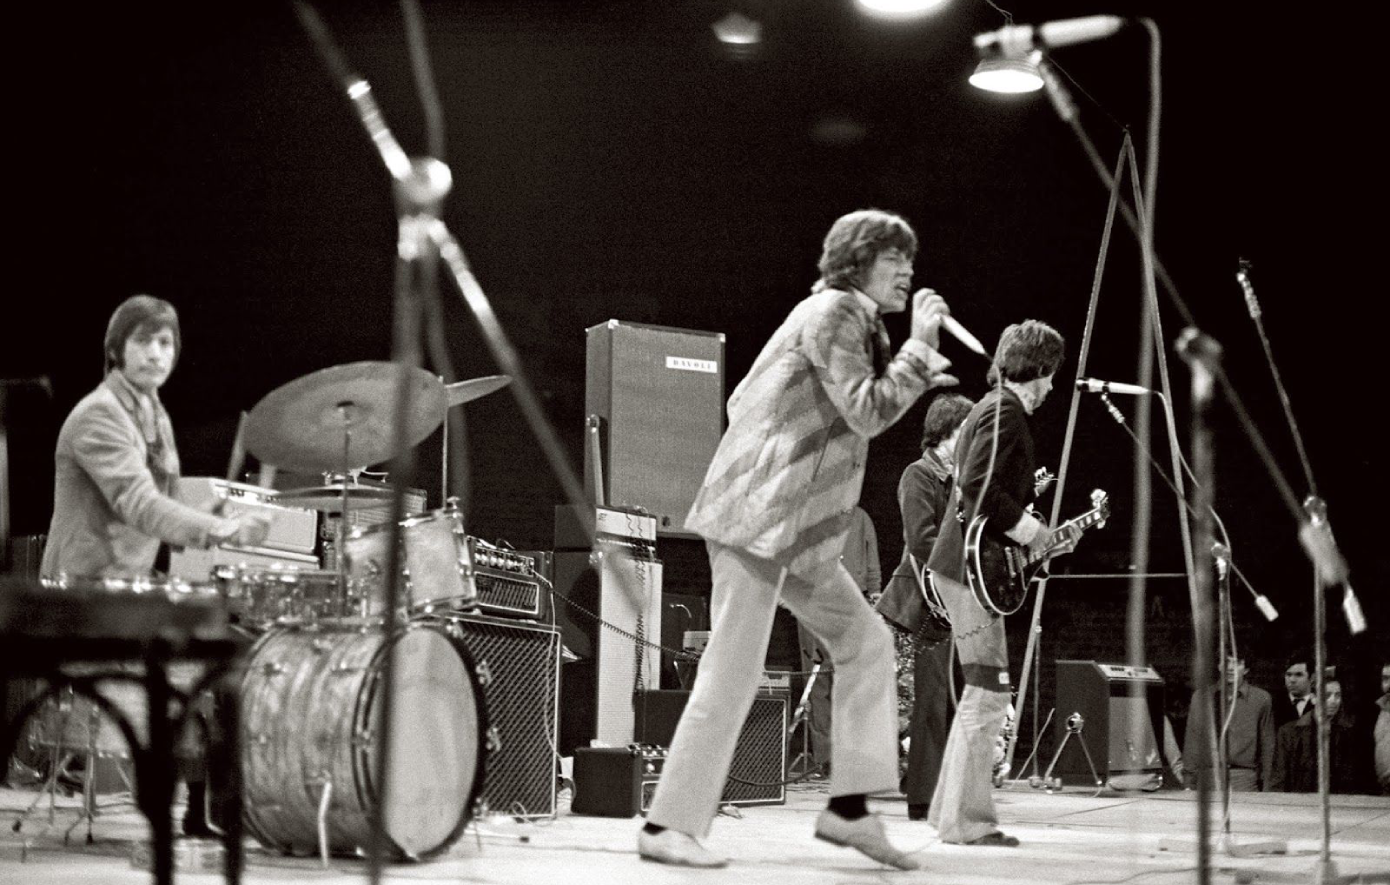 Σαν σήμερα 17 Απριλίου:  Ξεκινά η επεισοδιακή συναυλία των Rolling Stones στην Αθήνα που έσβησε με βία και συνθήματα